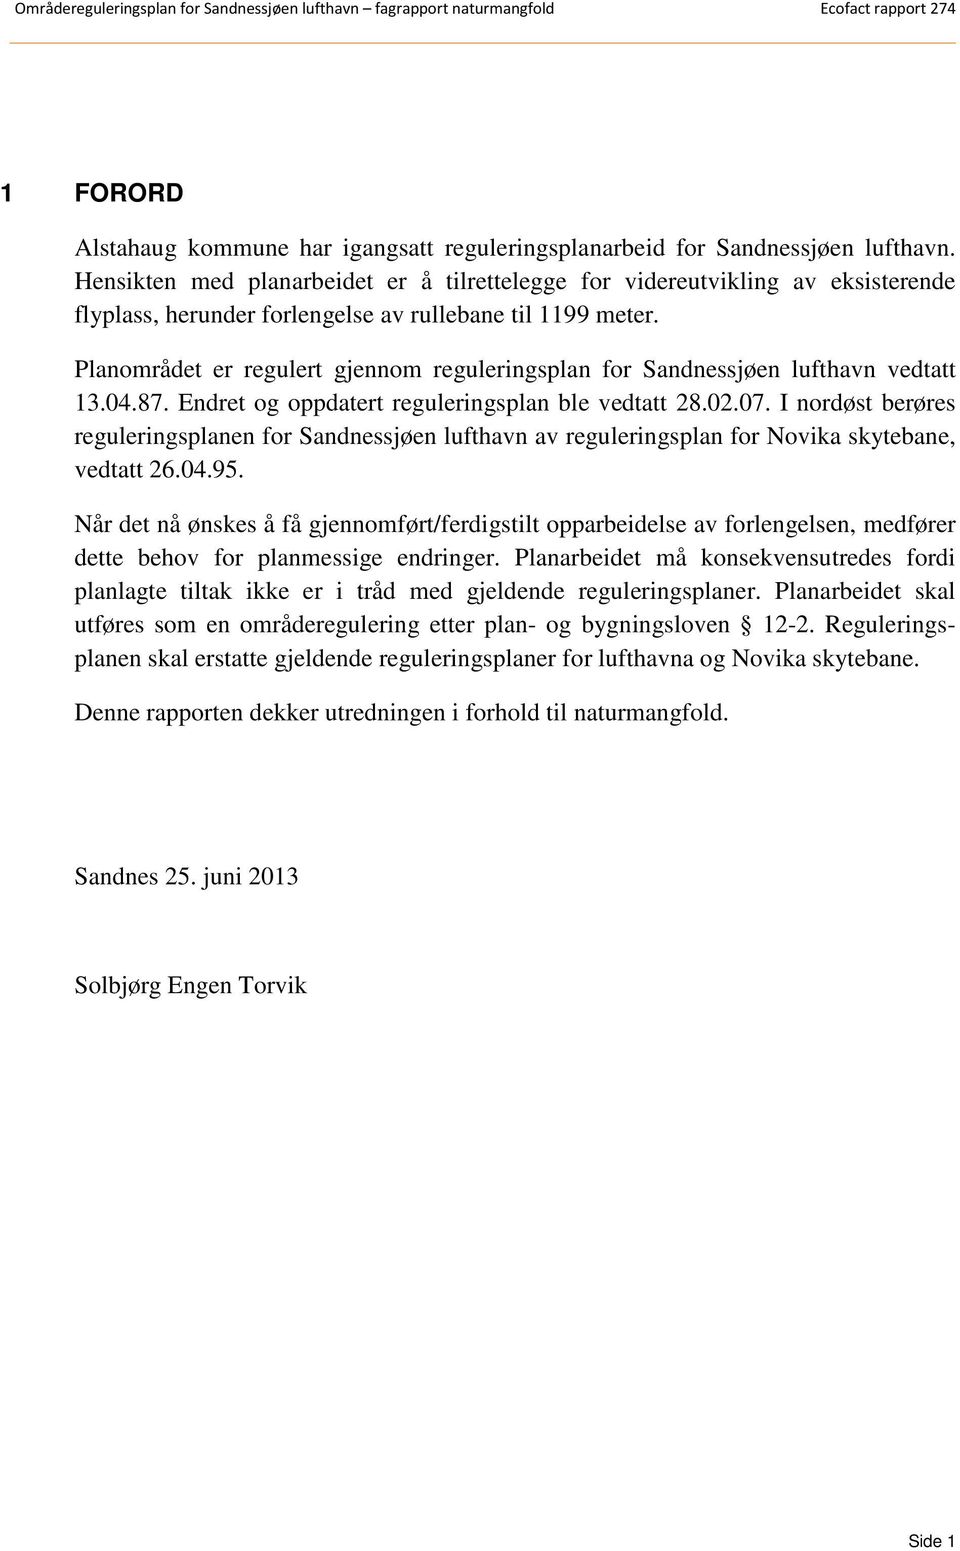 Planområdet er regulert gjennom reguleringsplan for Sandnessjøen lufthavn vedtatt 13.04.87. Endret og oppdatert reguleringsplan ble vedtatt 28.02.07.